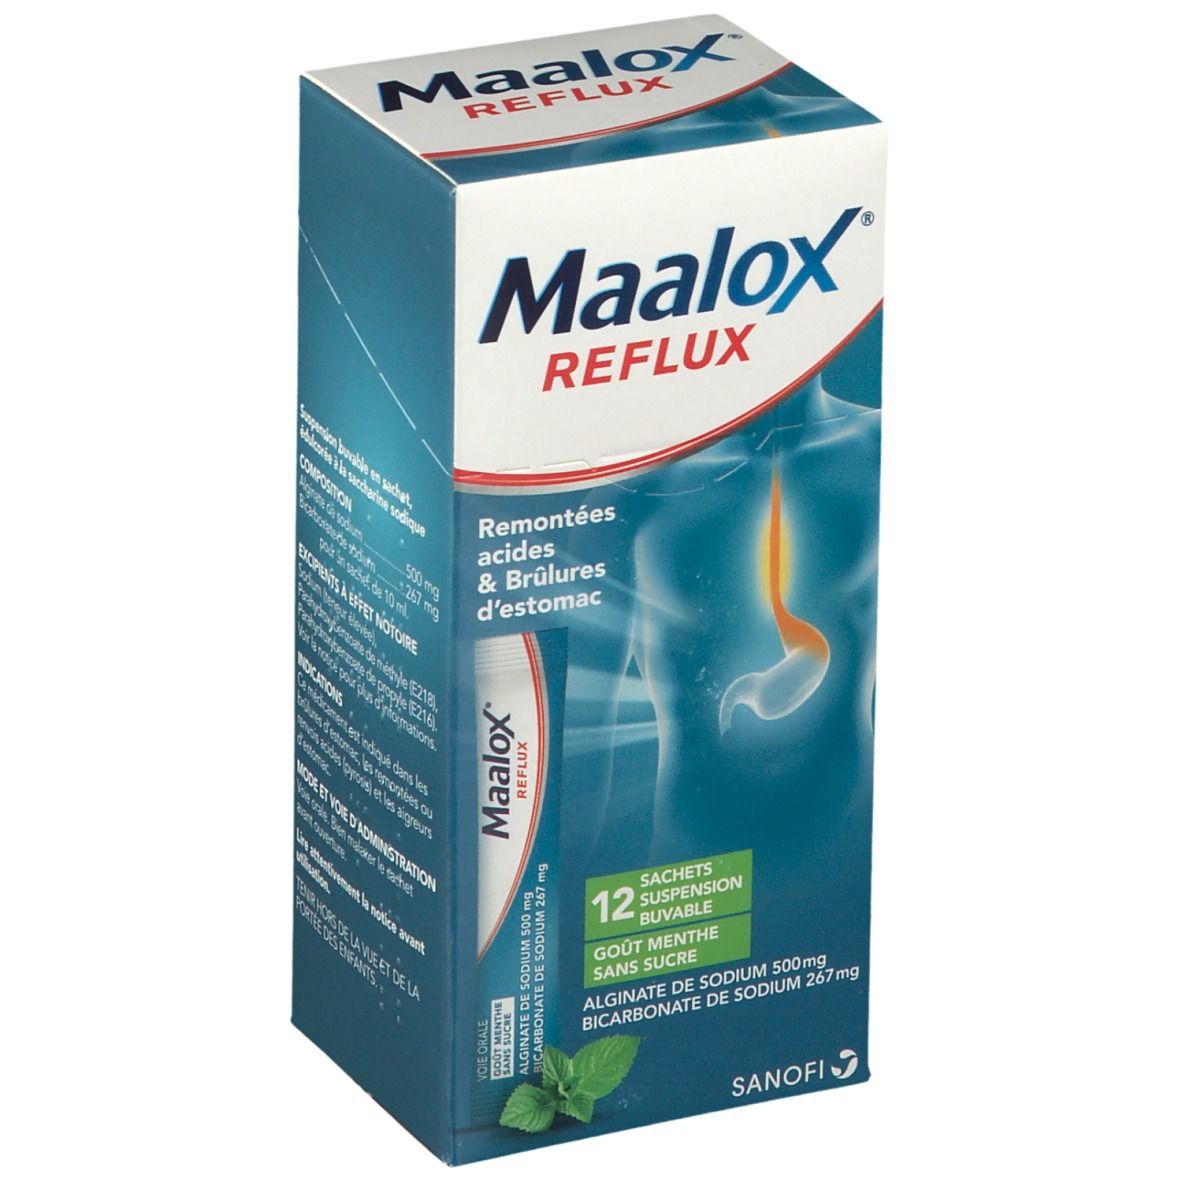 Maalox® Reflux Menthe s/s